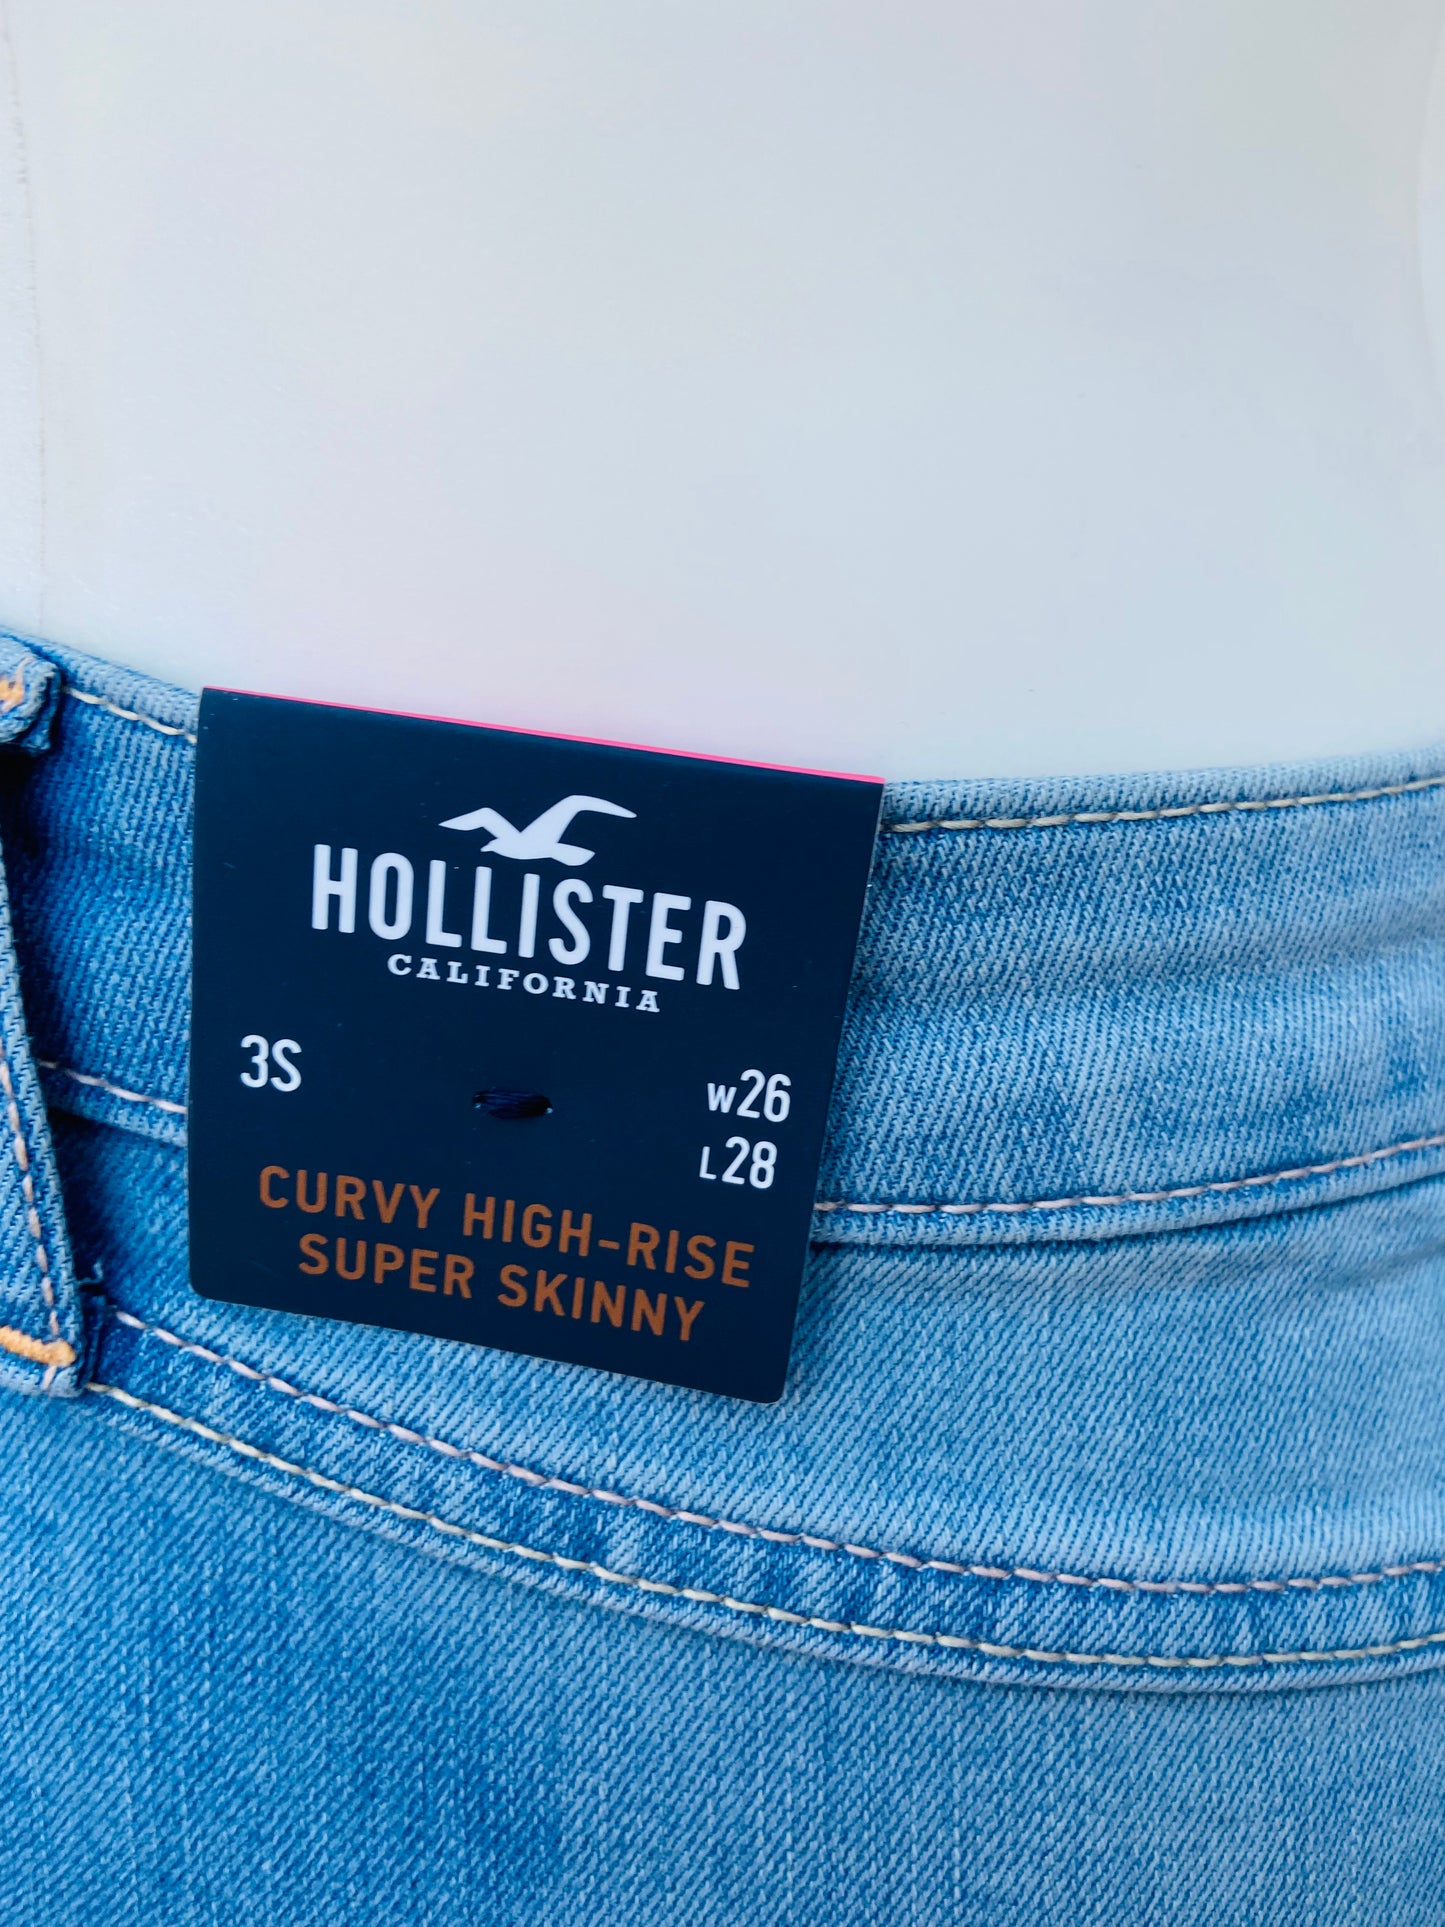 Pantalón Jeans Hollister original, azul claro con rasgados, CURVY HIGH-RISE SÚPER SKINNY.